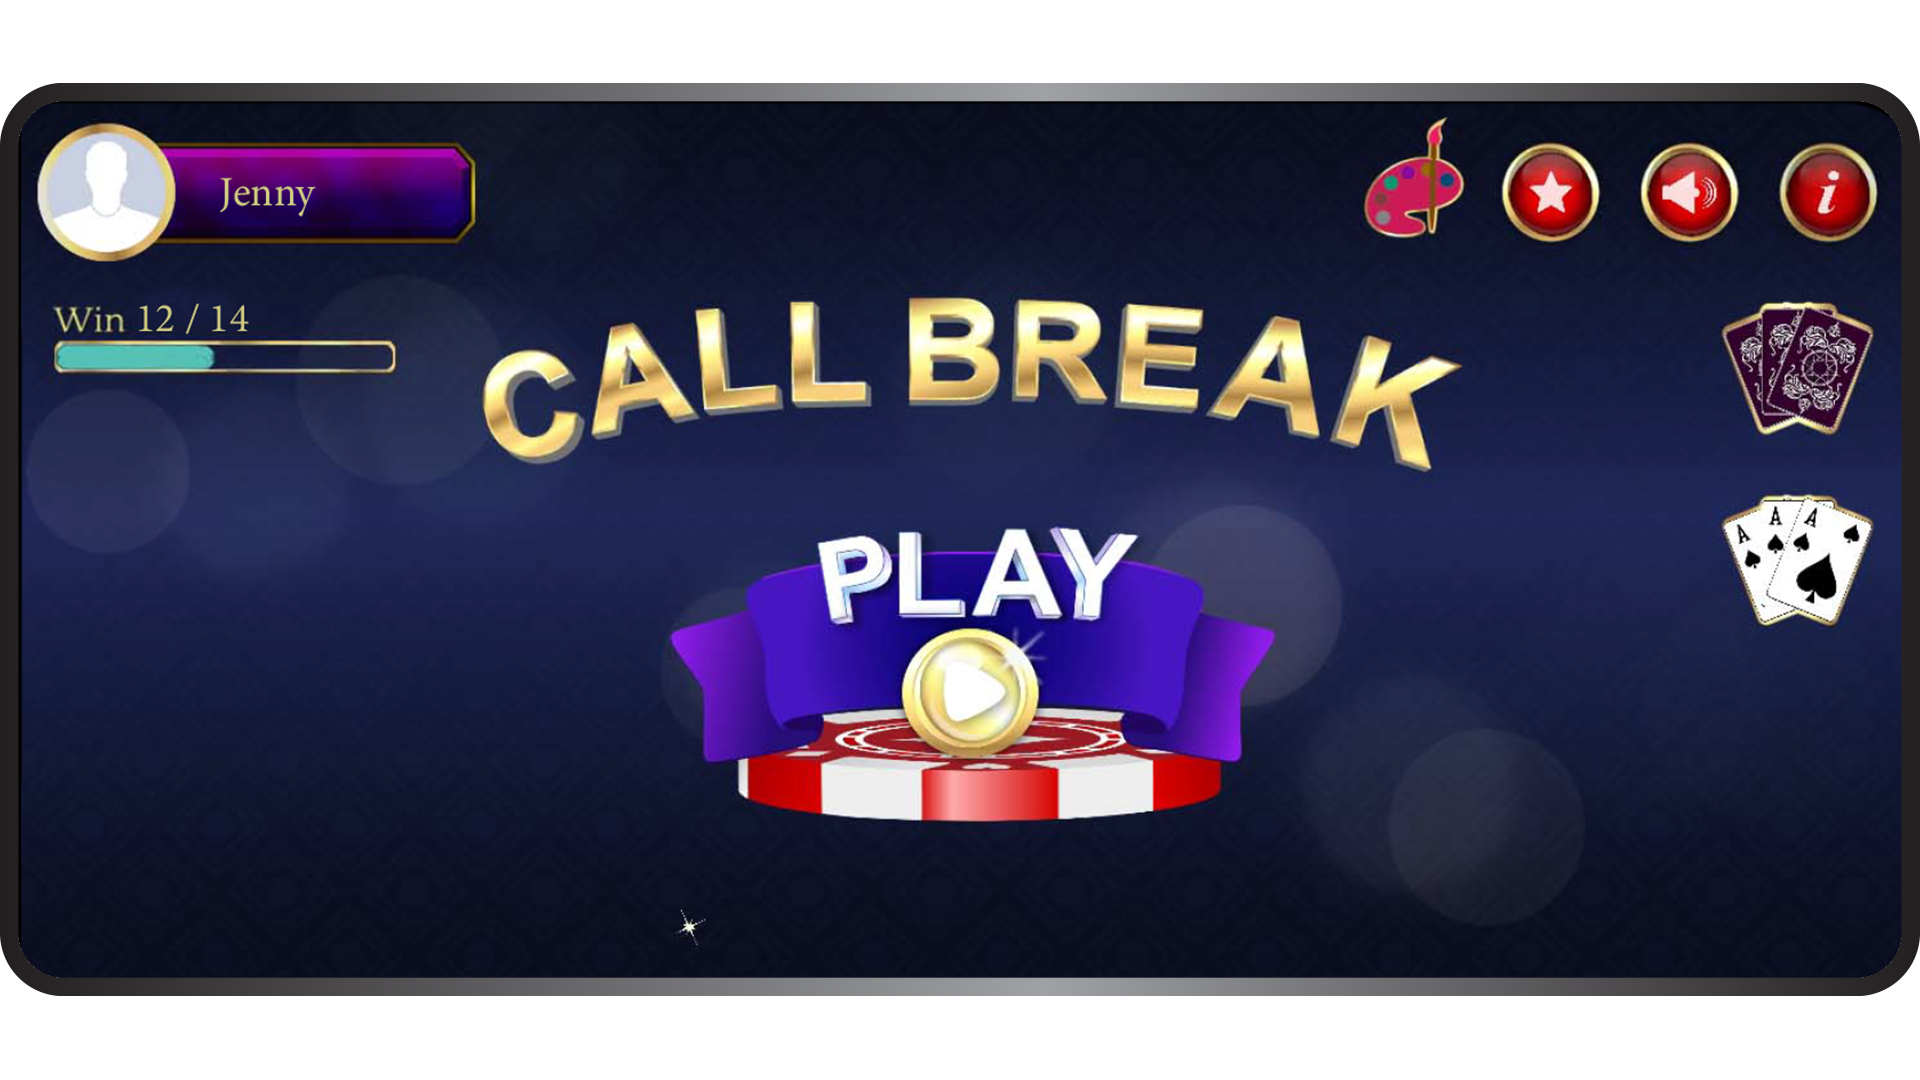 Call break game screenshot one